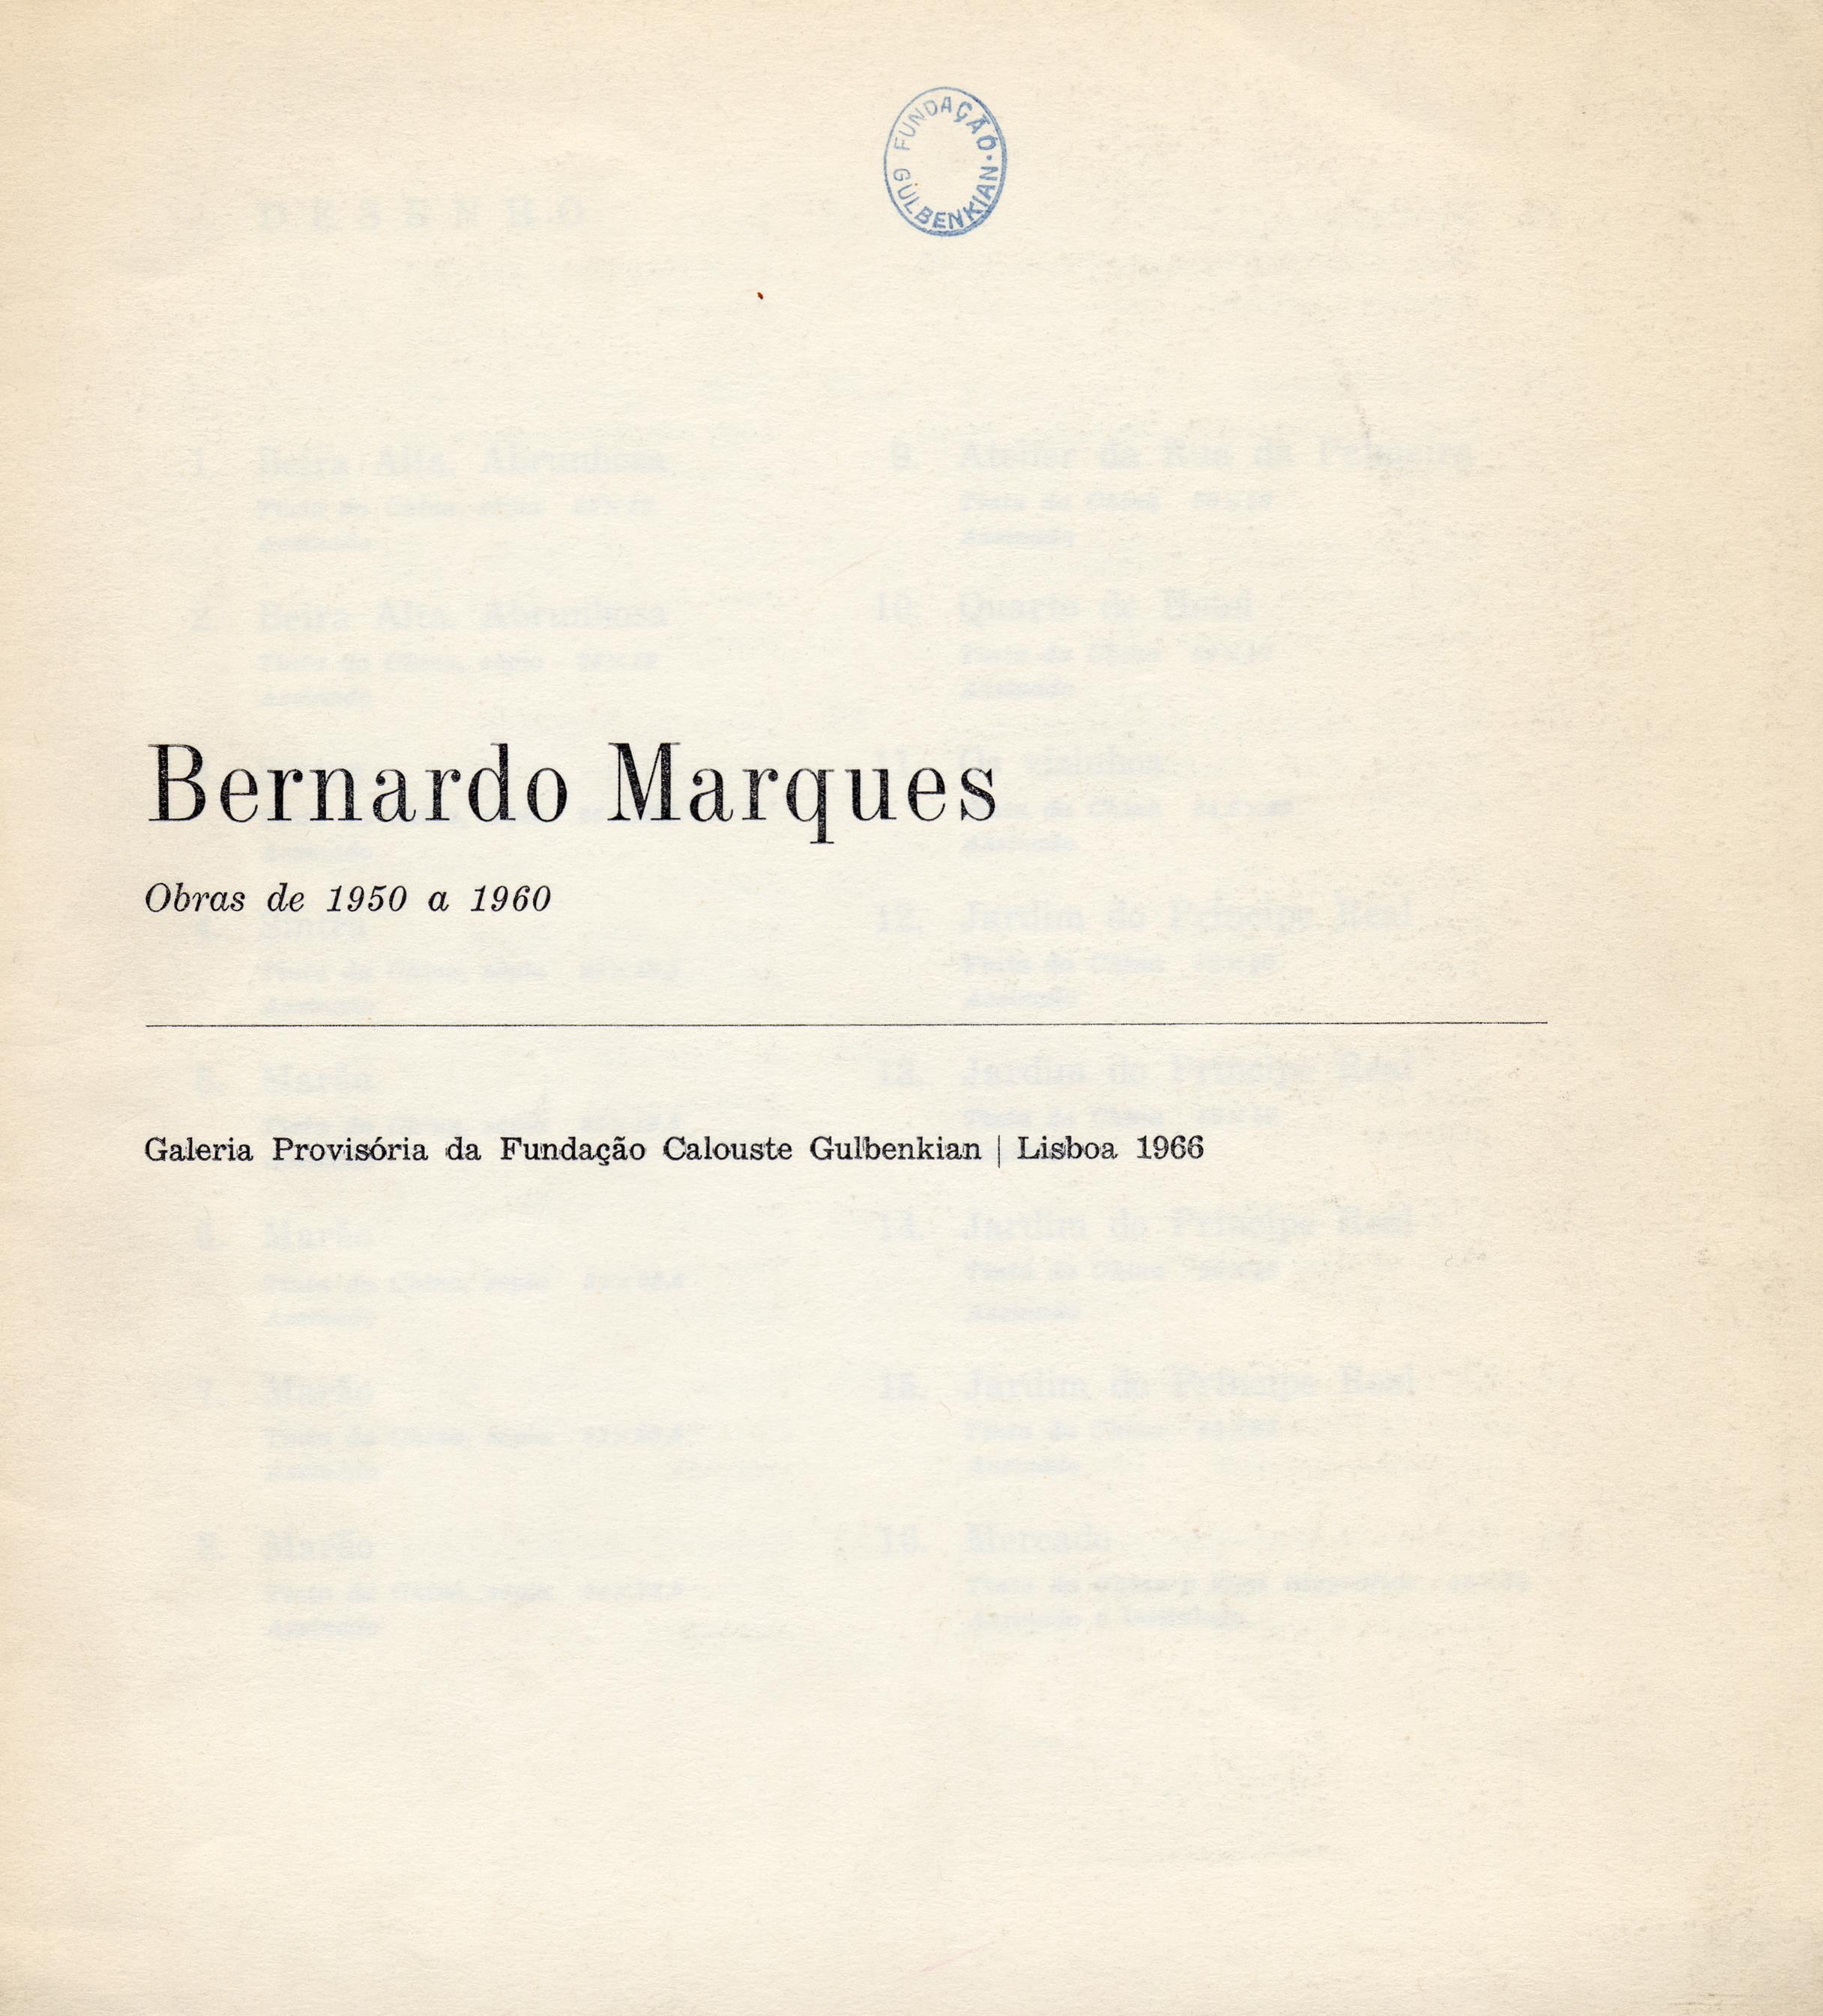 Bernardo Marques. Obras de 1950 a 1960